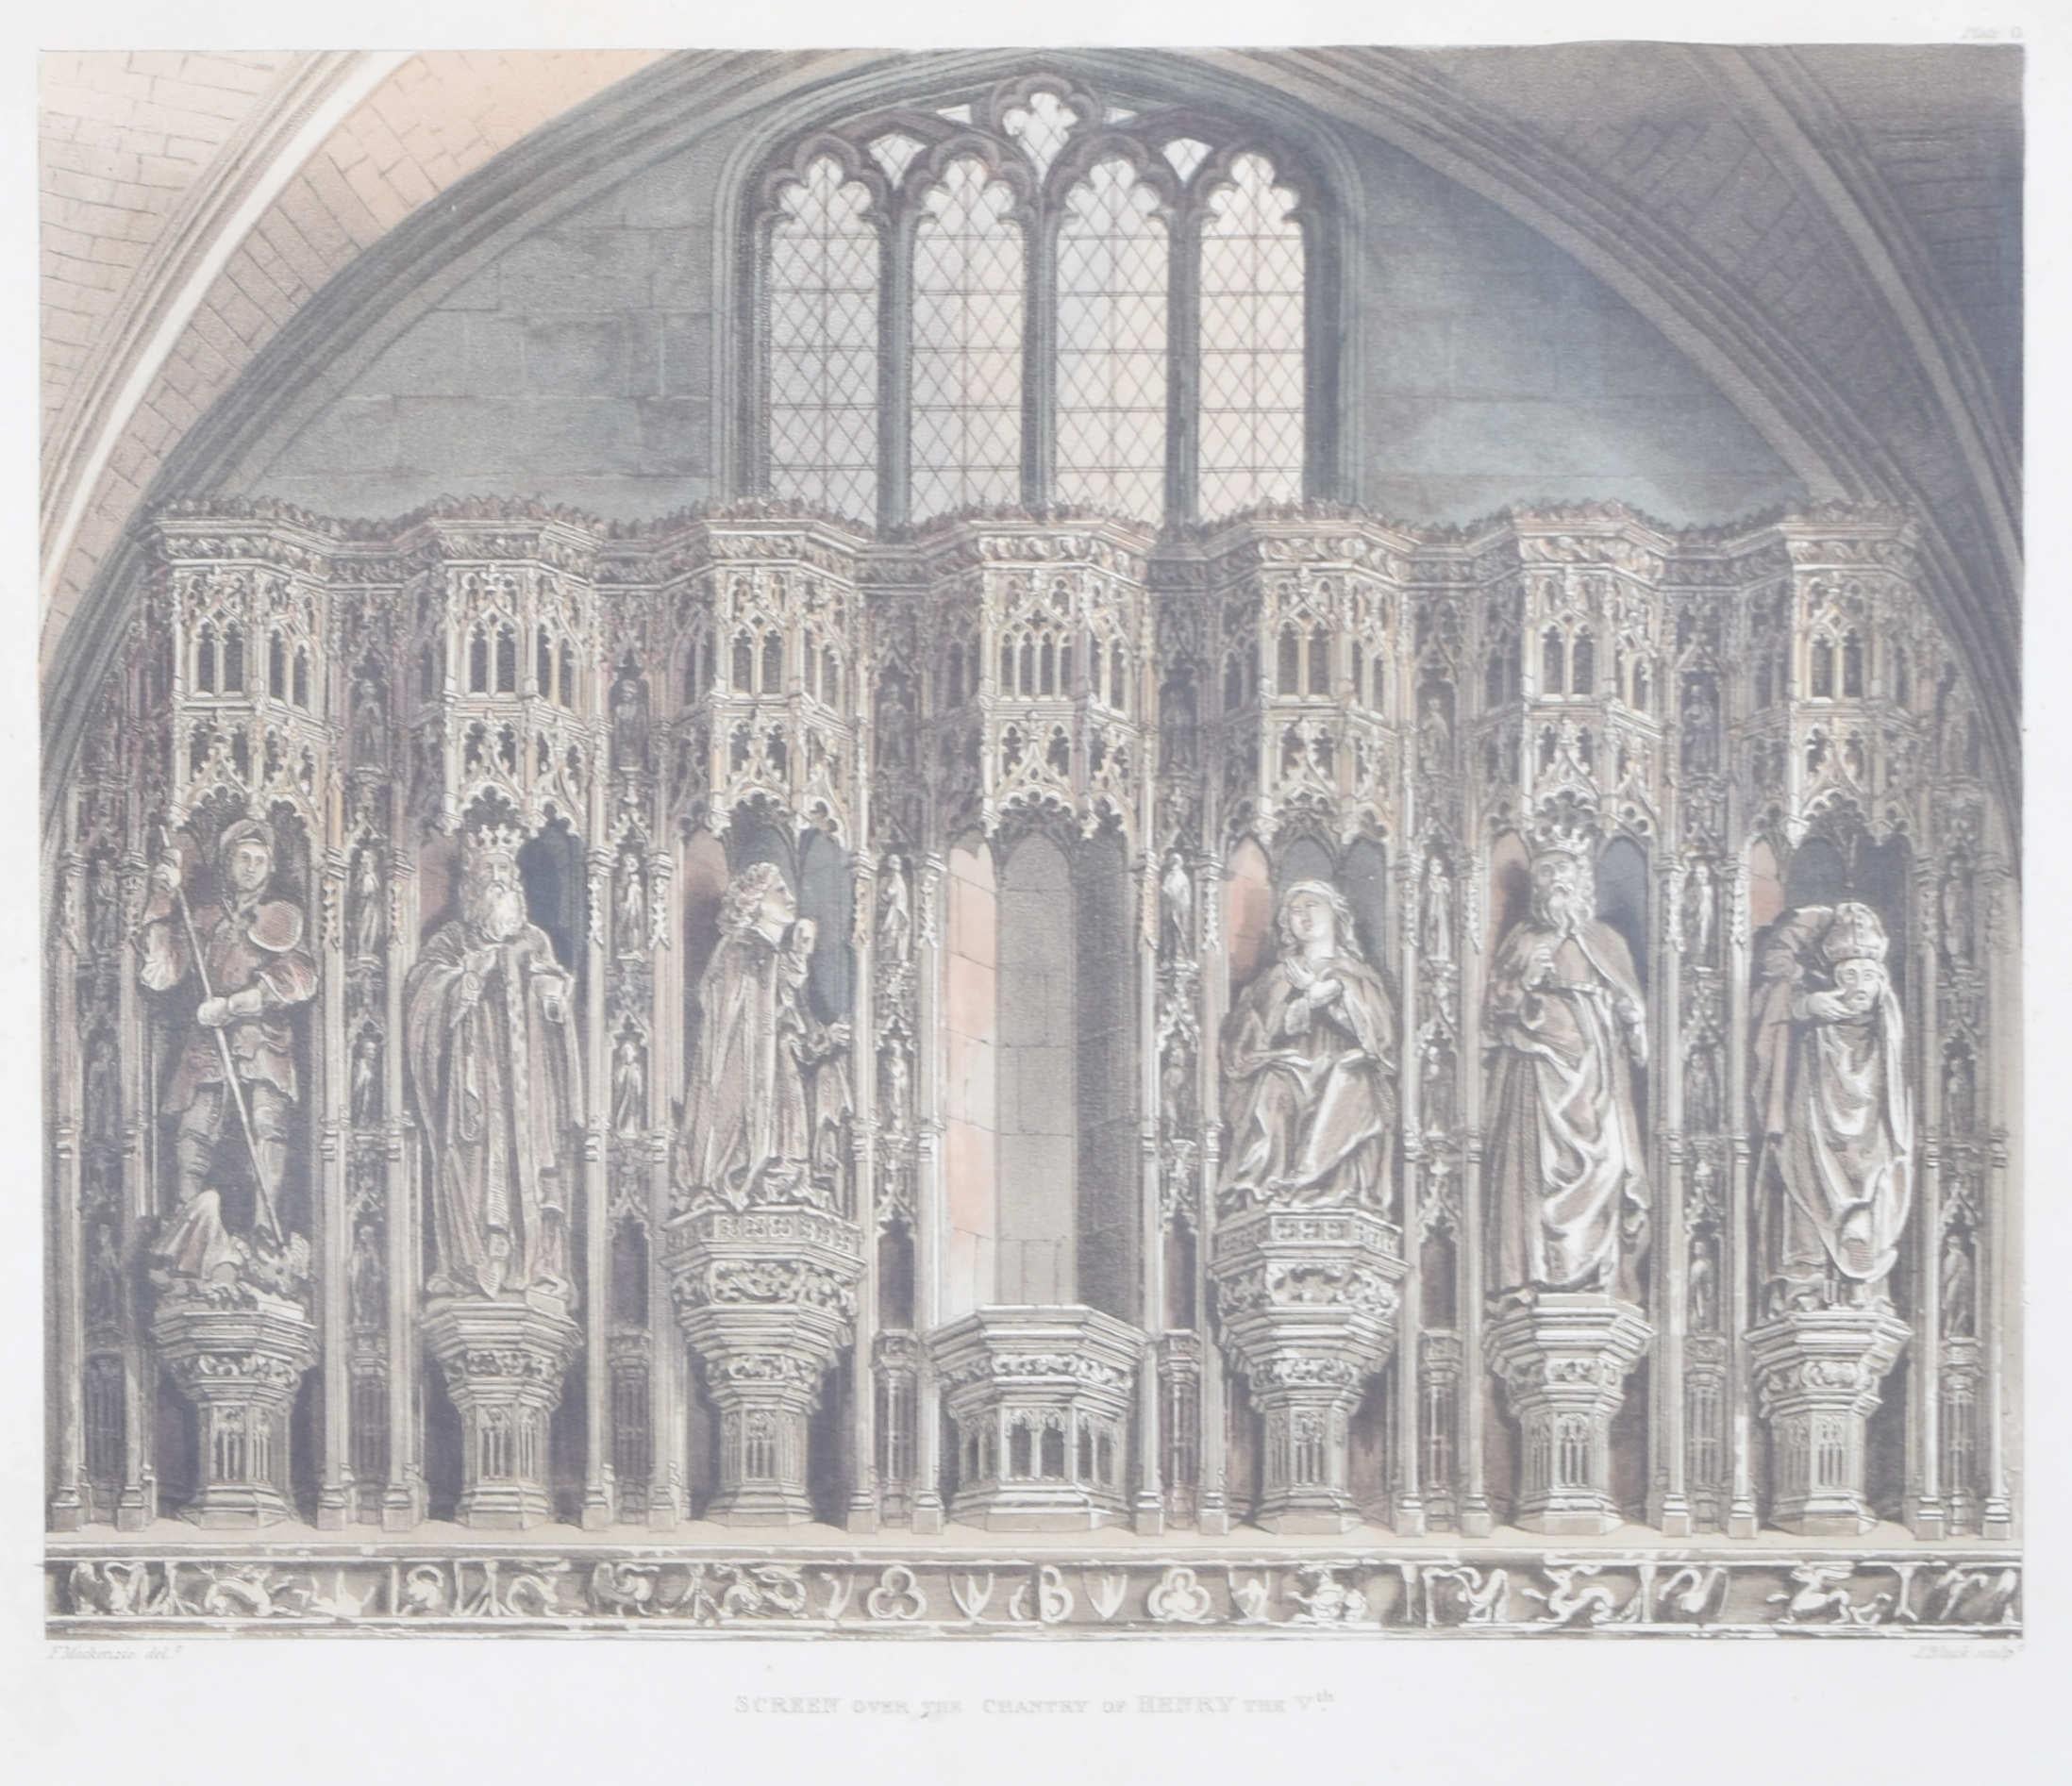 écran de chapelle de l'abbaye de Westminster gravé par J Black pour Ackermann - Print de Rudolph Ackermann